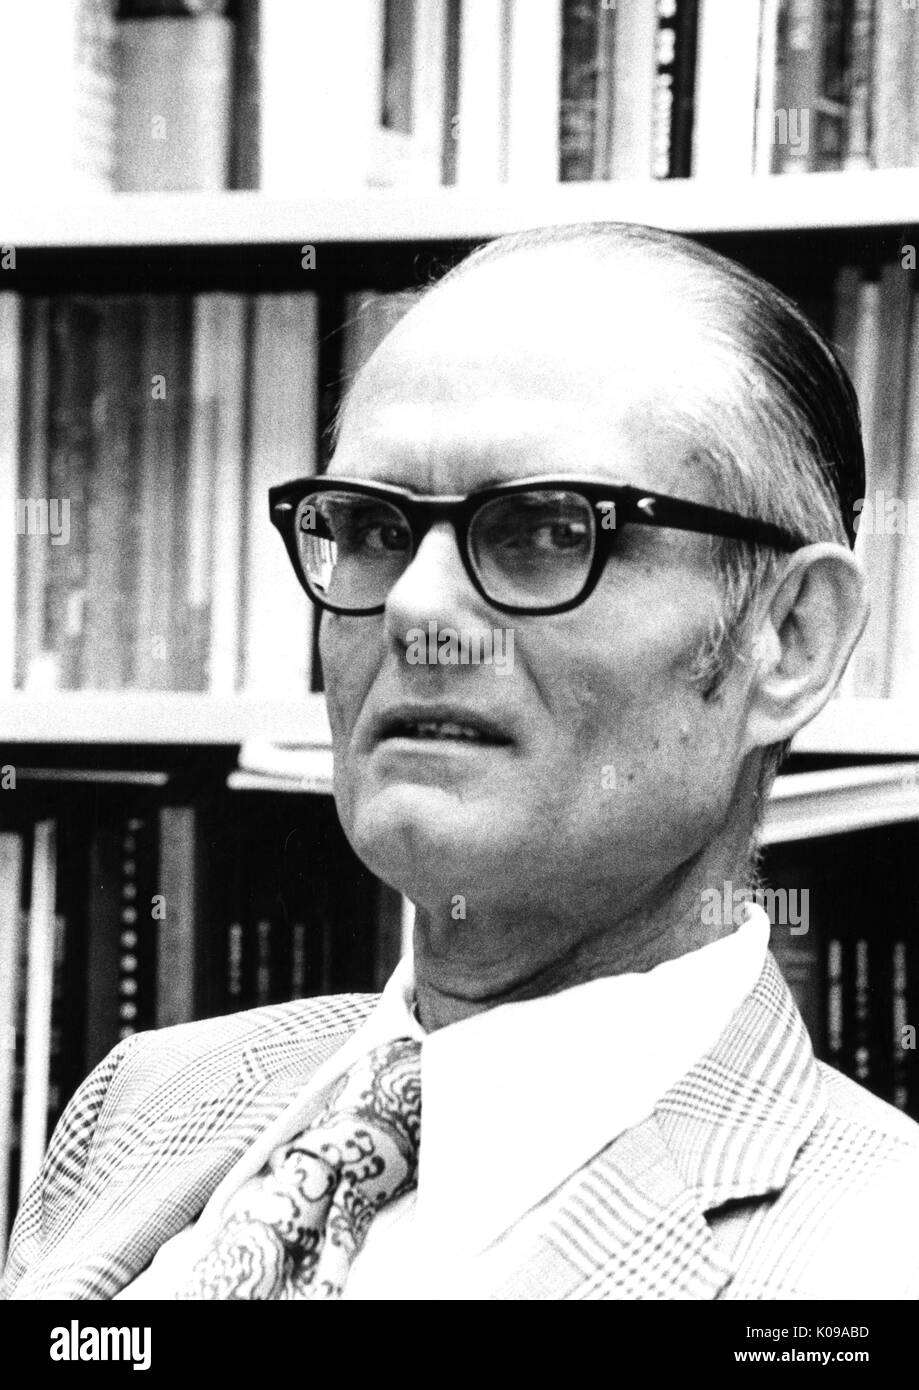 Head-shot der Psychologe Julian Stanley, tragen eine gemusterte Krawatte und Anzug mit weißem Hemd und dunkler dicken Brillengläsern, vor einem Regal mit Büchern gefüllt sitzend, mit einem ernsten Gesichtsausdruck. 1973. Stockfoto